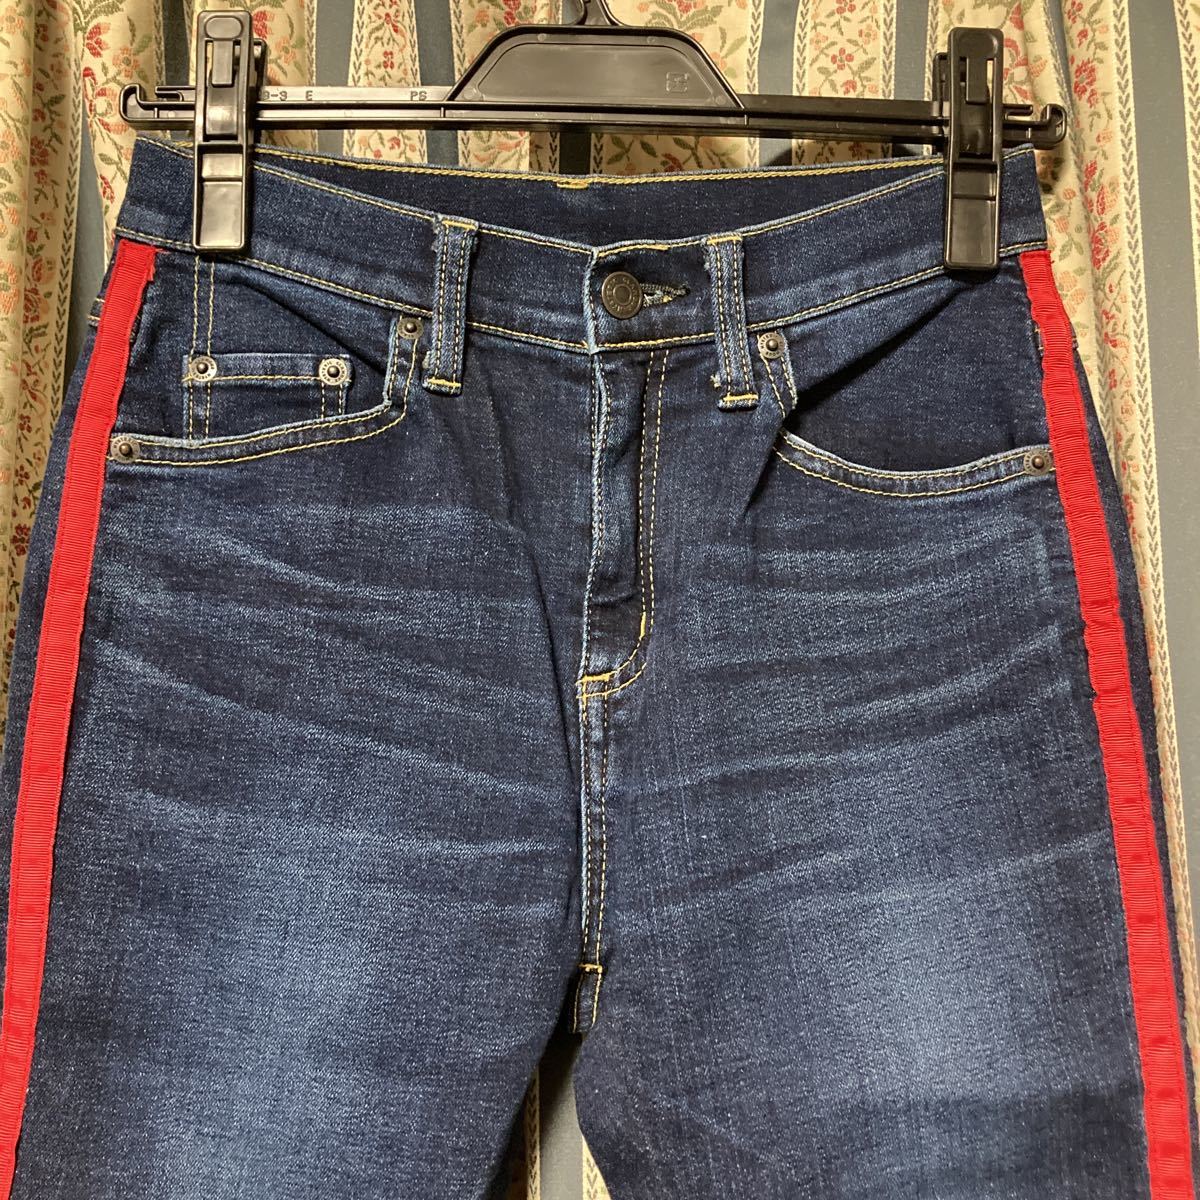  Hysteric Glamour боковой линия обтягивающие джинсы брюки 27 голубой Denim лодыжка длина высокий laiz стрейч тонкий 